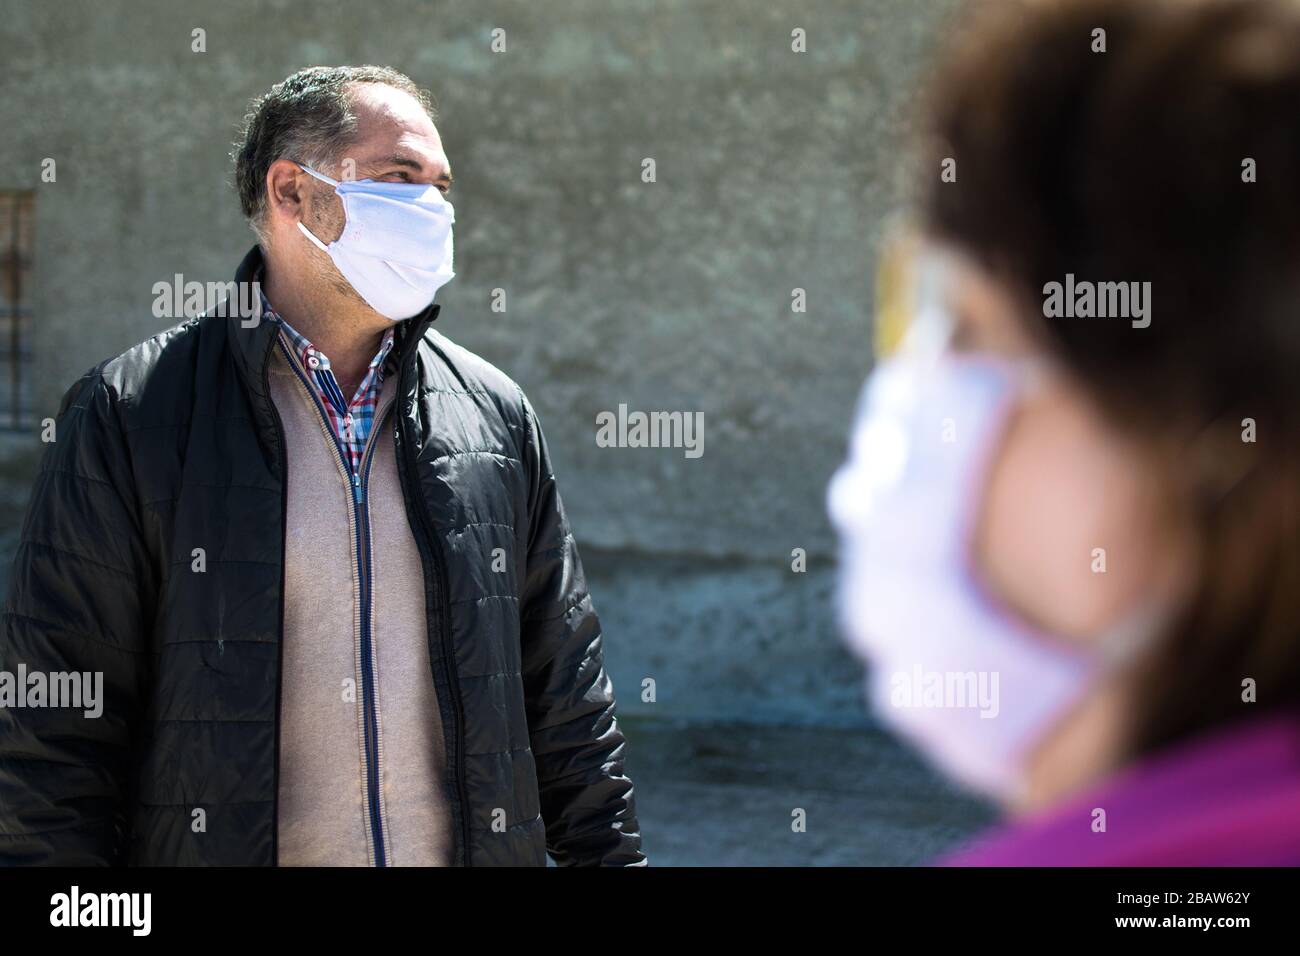 Deux personnes parlent de garder la distance de sécurité, porter un masque de protection pour le virus du coronavirus ou le virus du covid-19 dans une ville. Virus Corona, Covid-19. Banque D'Images